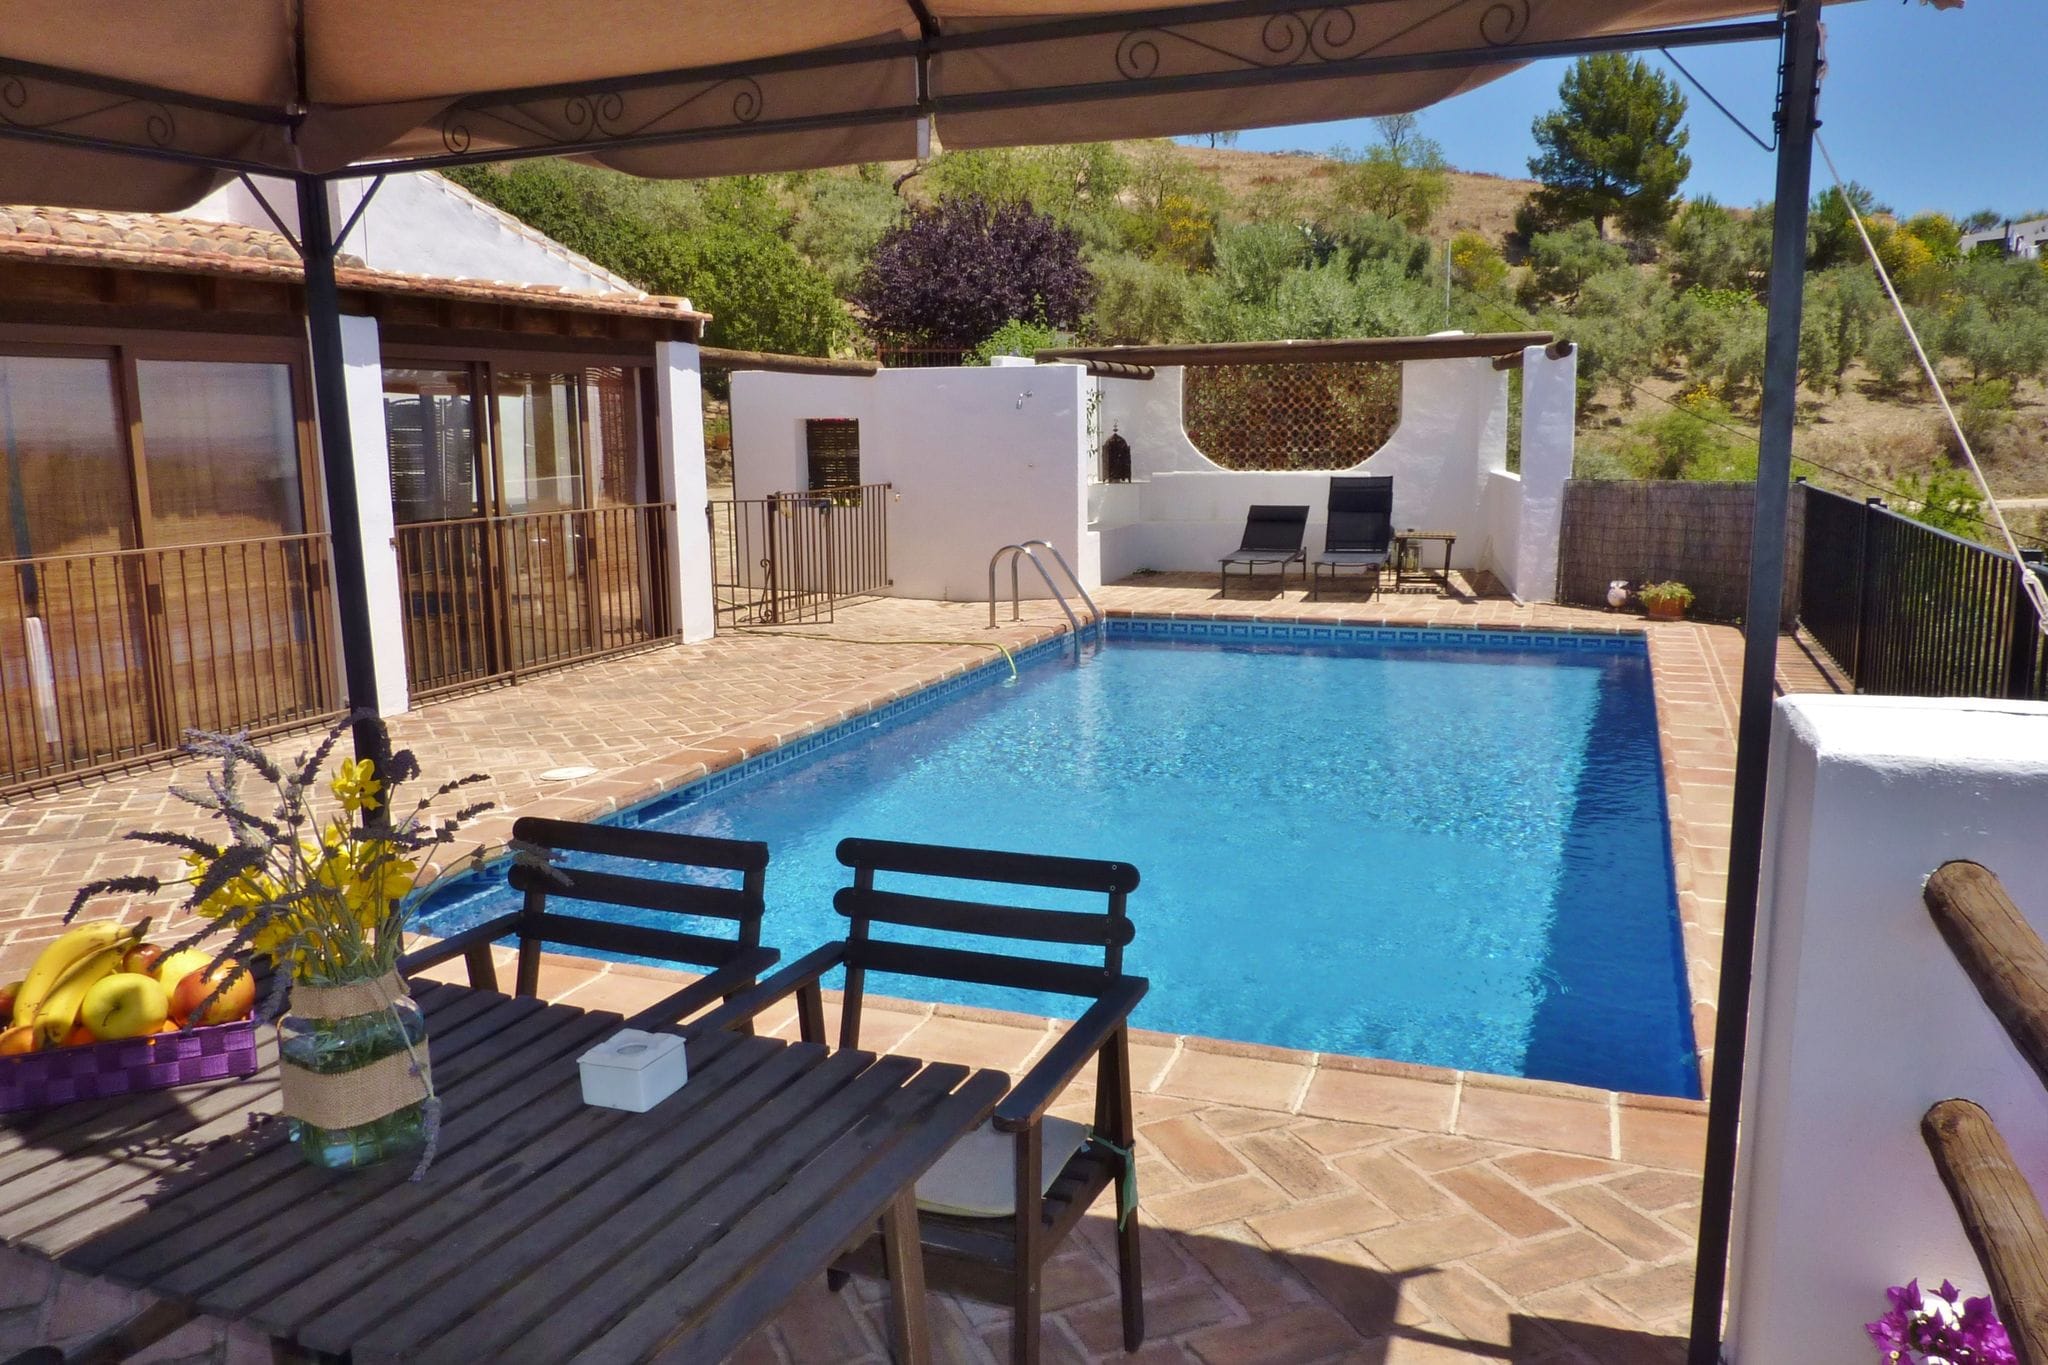 Gezellig vakantiehuis in Andalusië met een privézwembad